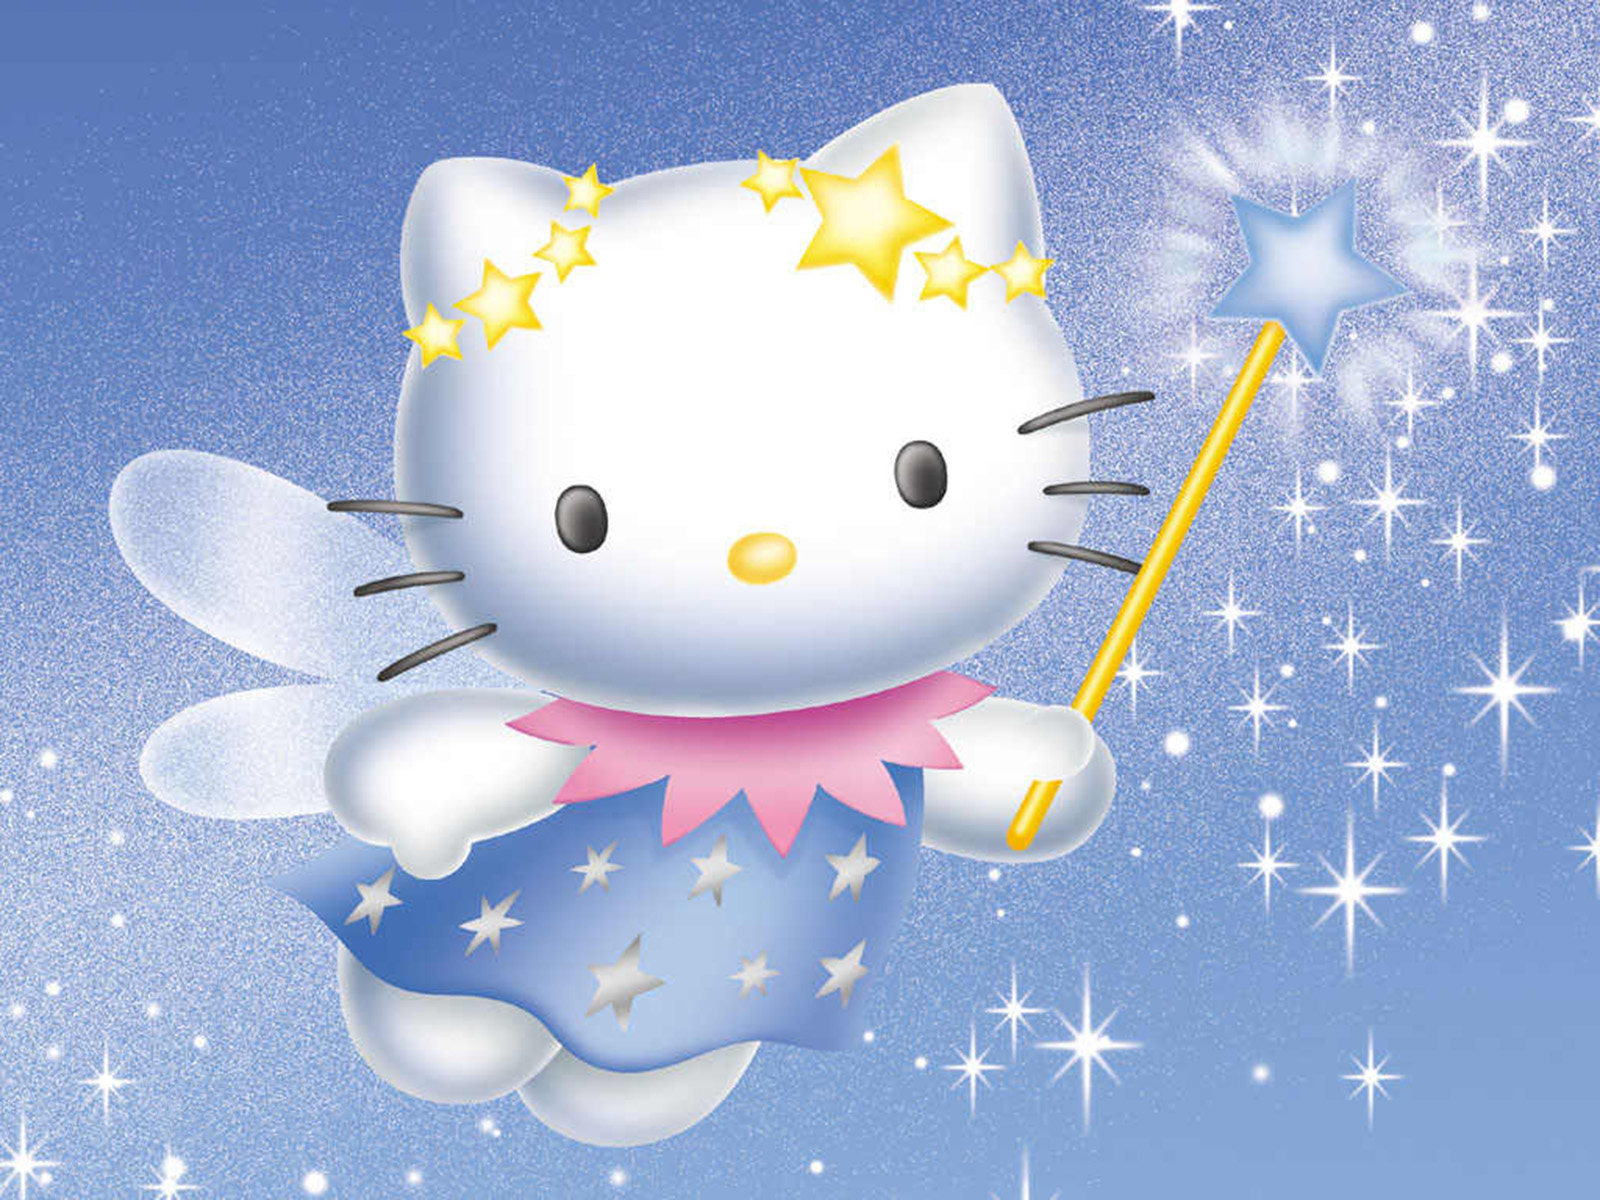 Wallpaper de Hello Kitty con varita magica